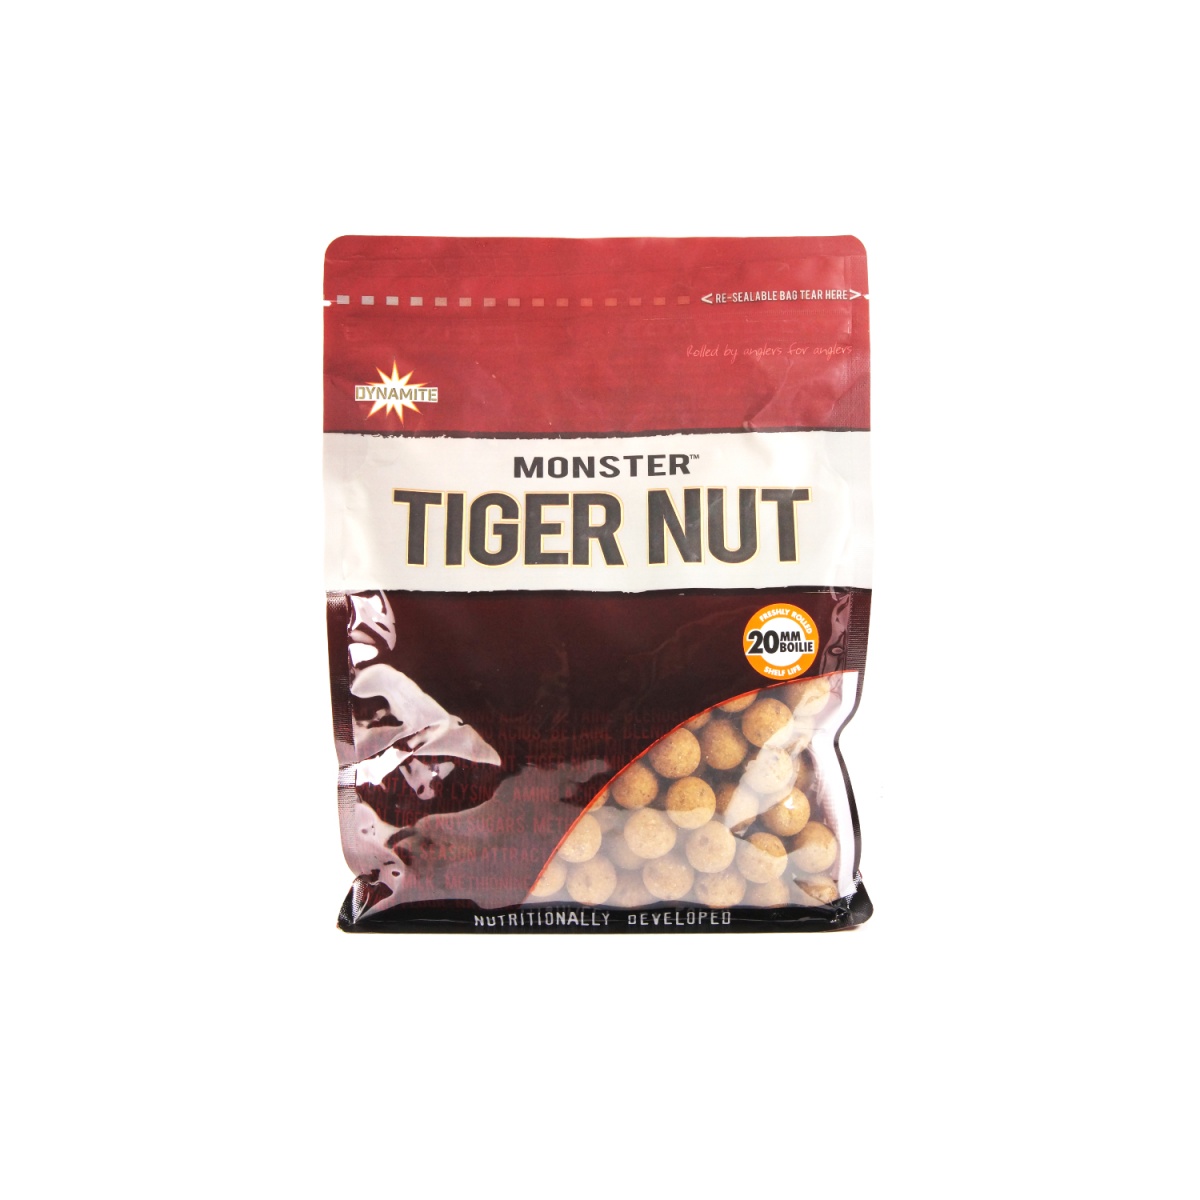 DynamiteBaits Monster Tiger Nut Boilie - Kulki Proteinowe 20 mm / 1kg rozmiar / opakowanie